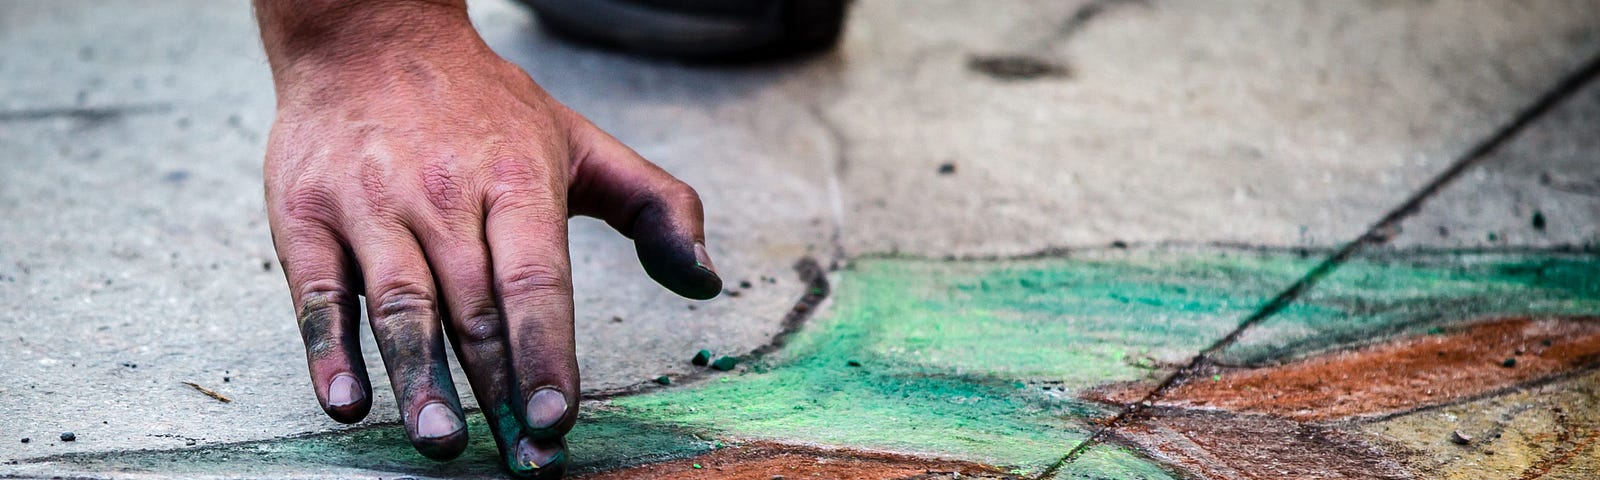 Photographie de la main d’un artiste de rue, dessinant